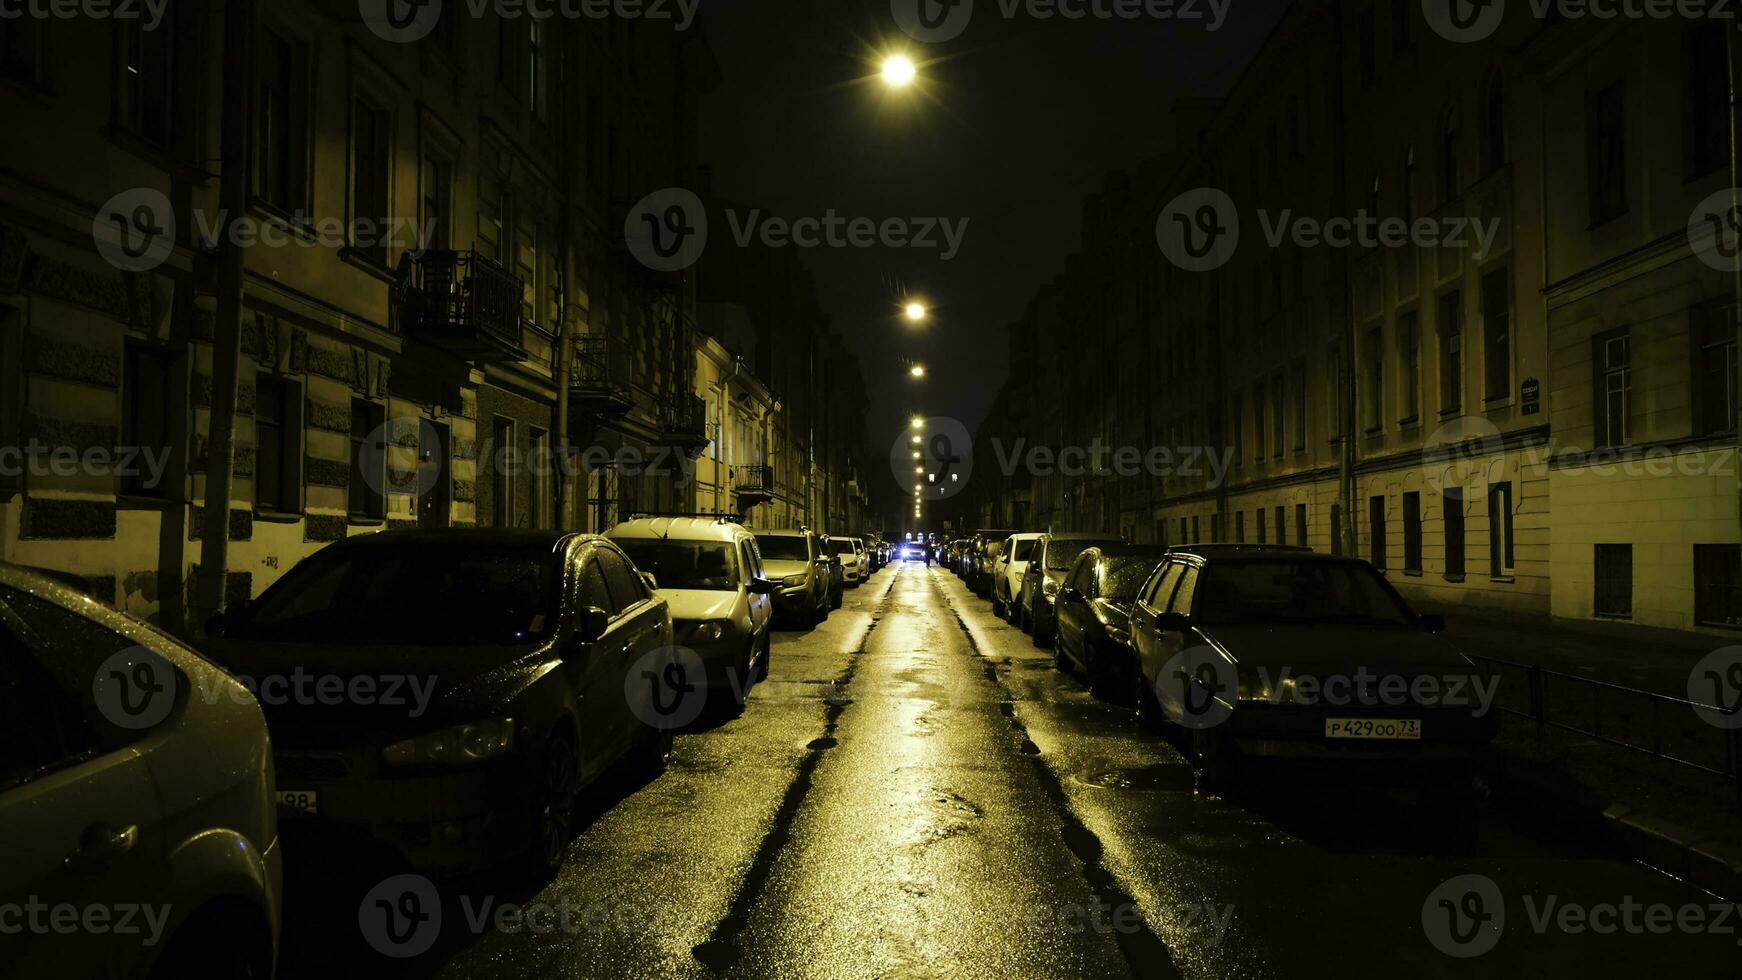 europeo calle en ligero de amarillo linternas a noche con carros en estacionamiento. concepto. Derecho hermosa calle con residencial edificios y estacionado carros iluminado por amarillo linternas a noche foto